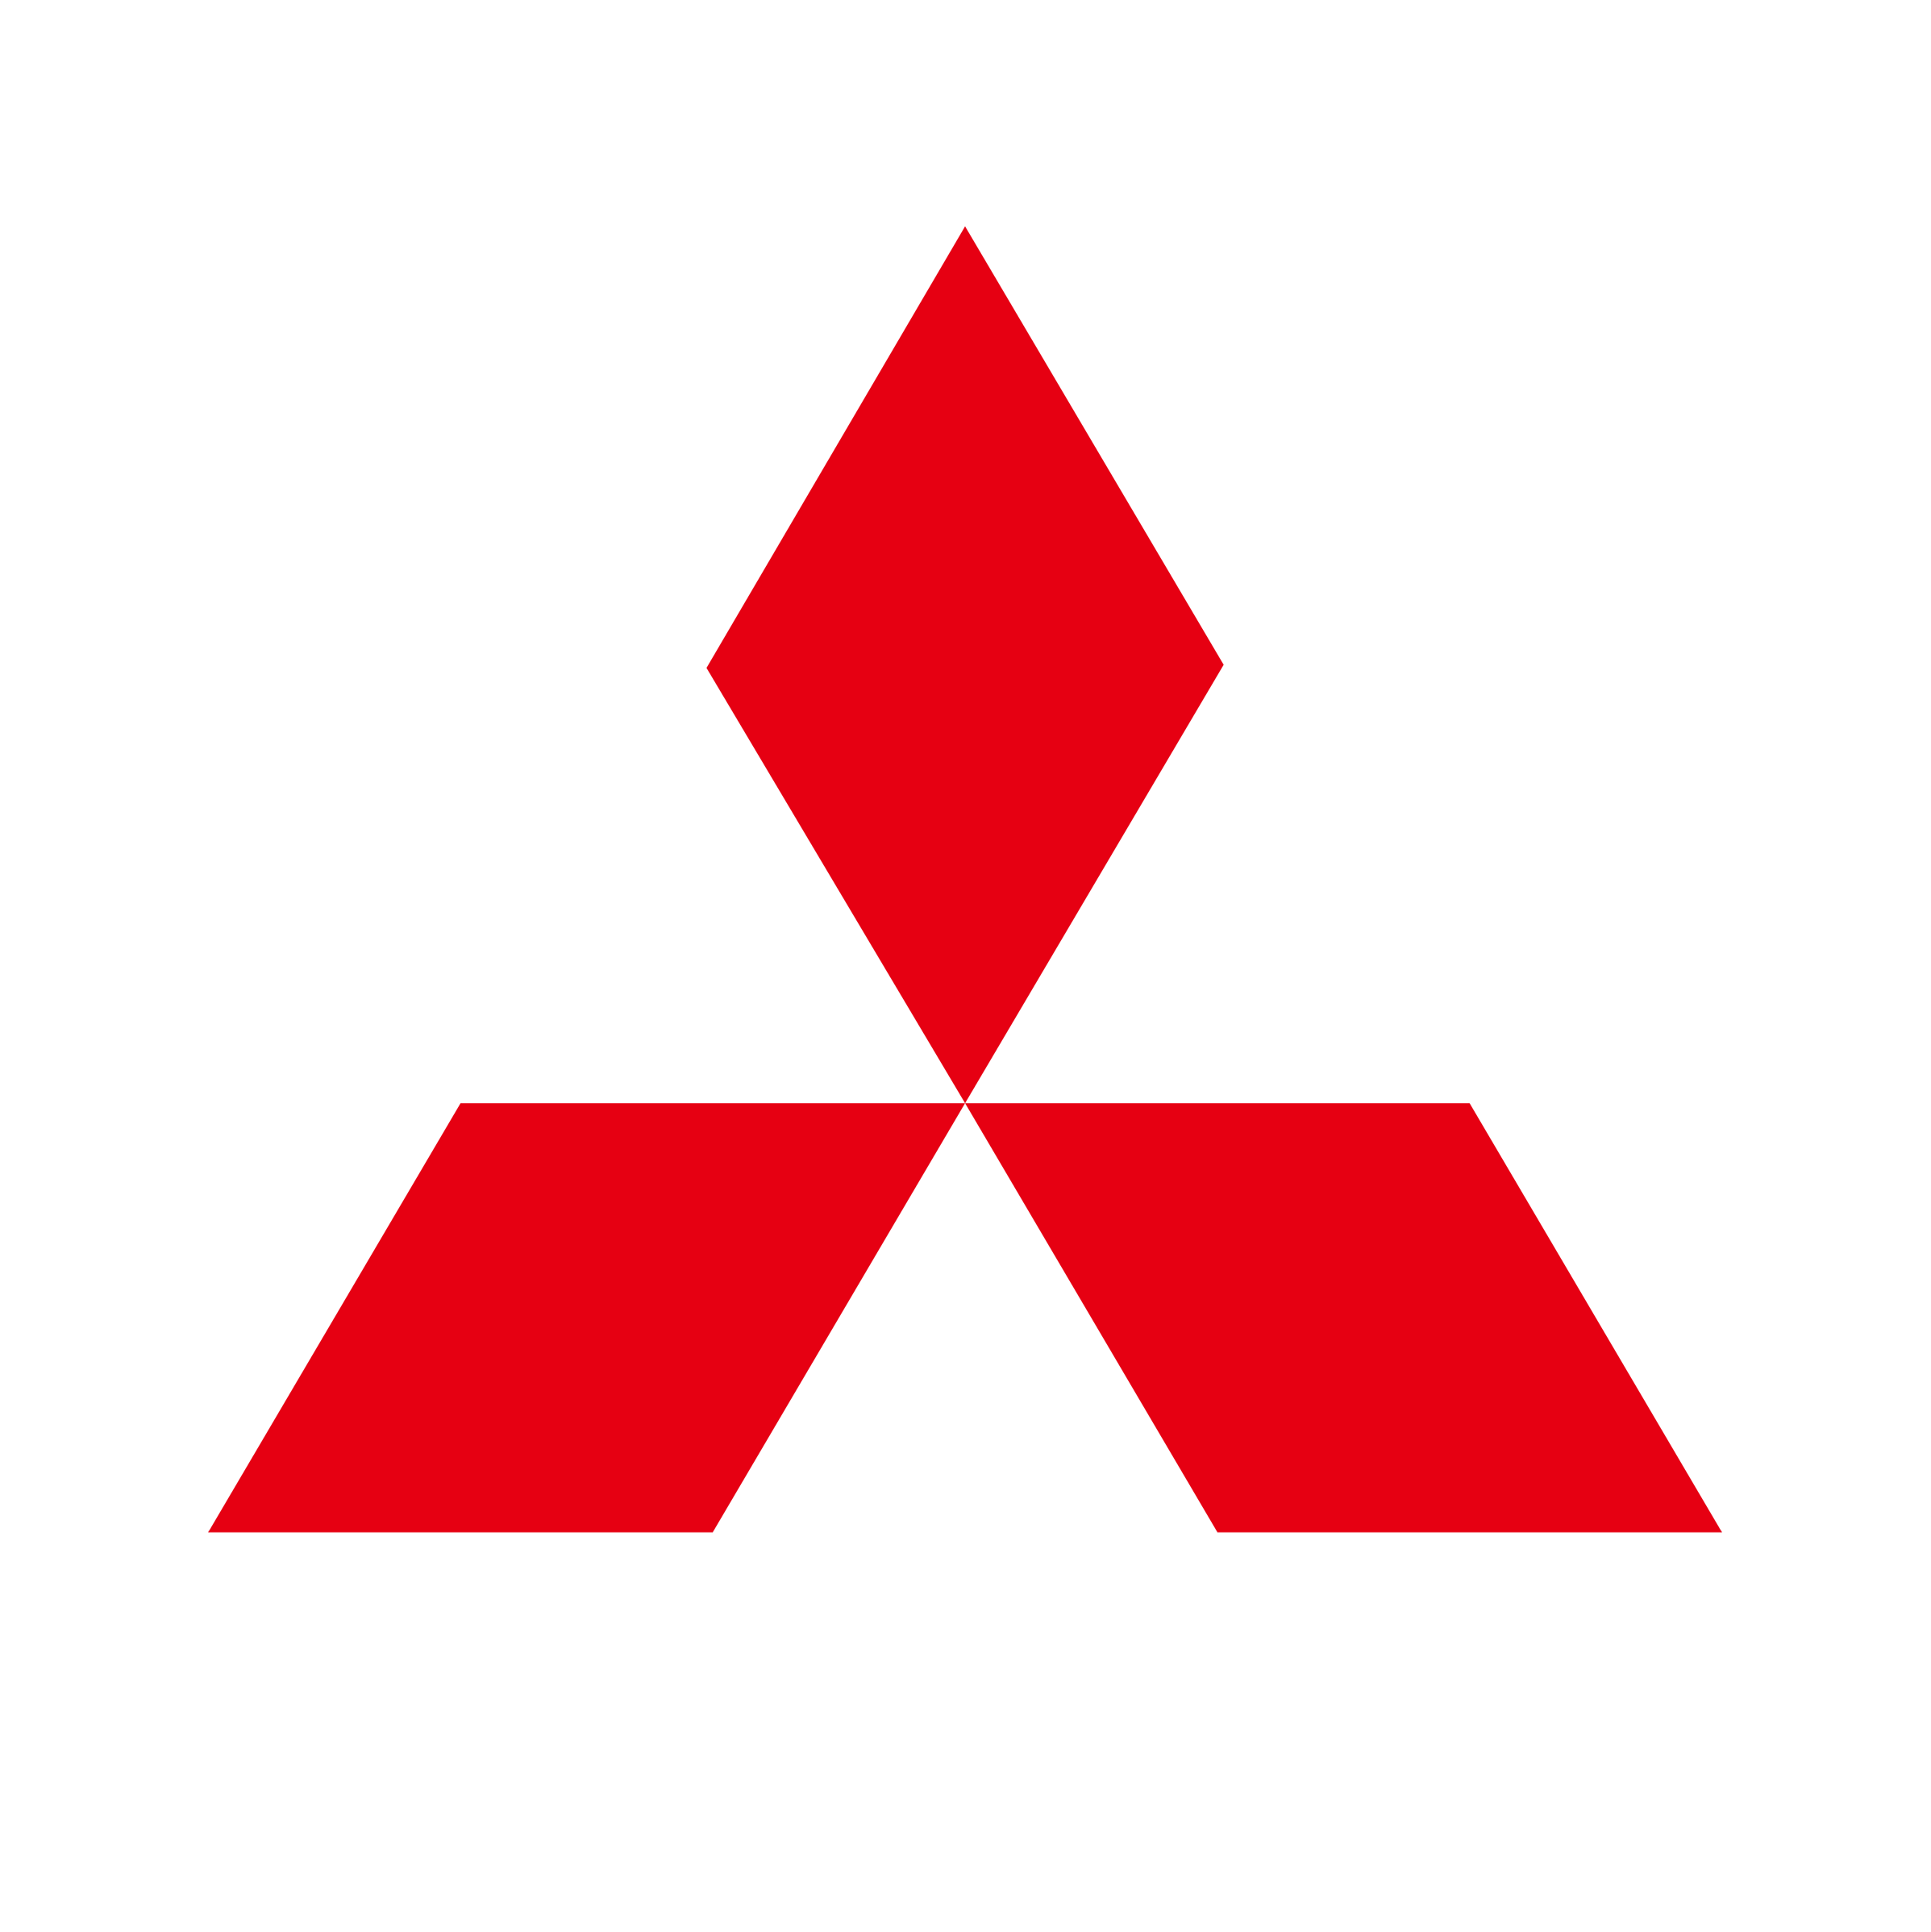 mitsubishi-emblem-1024x768.png